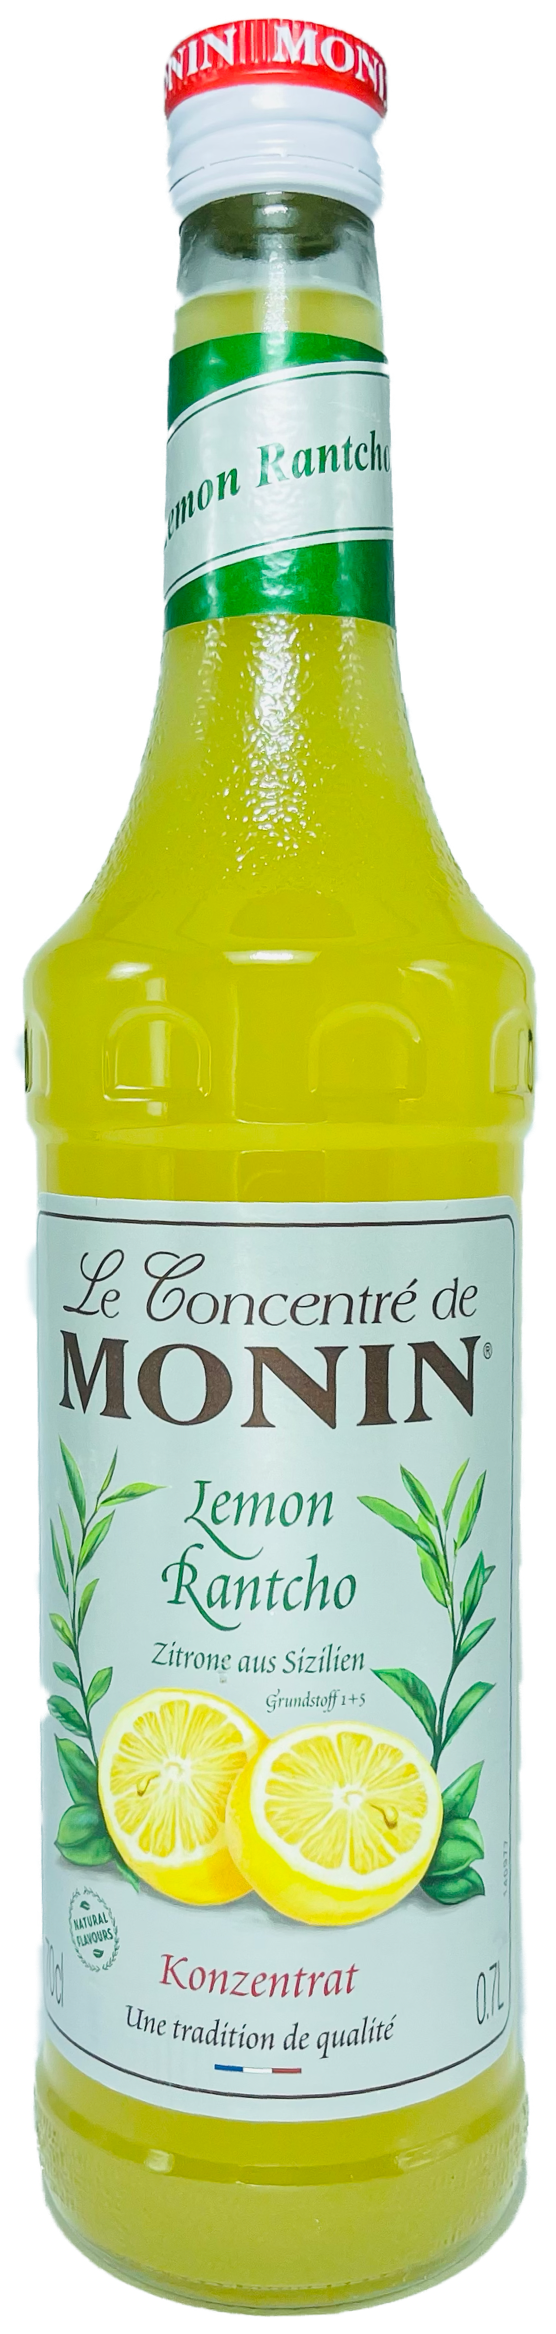 Monin Lemon Rantcho Zitrone aus Sizilien Konzentrat 0,7L